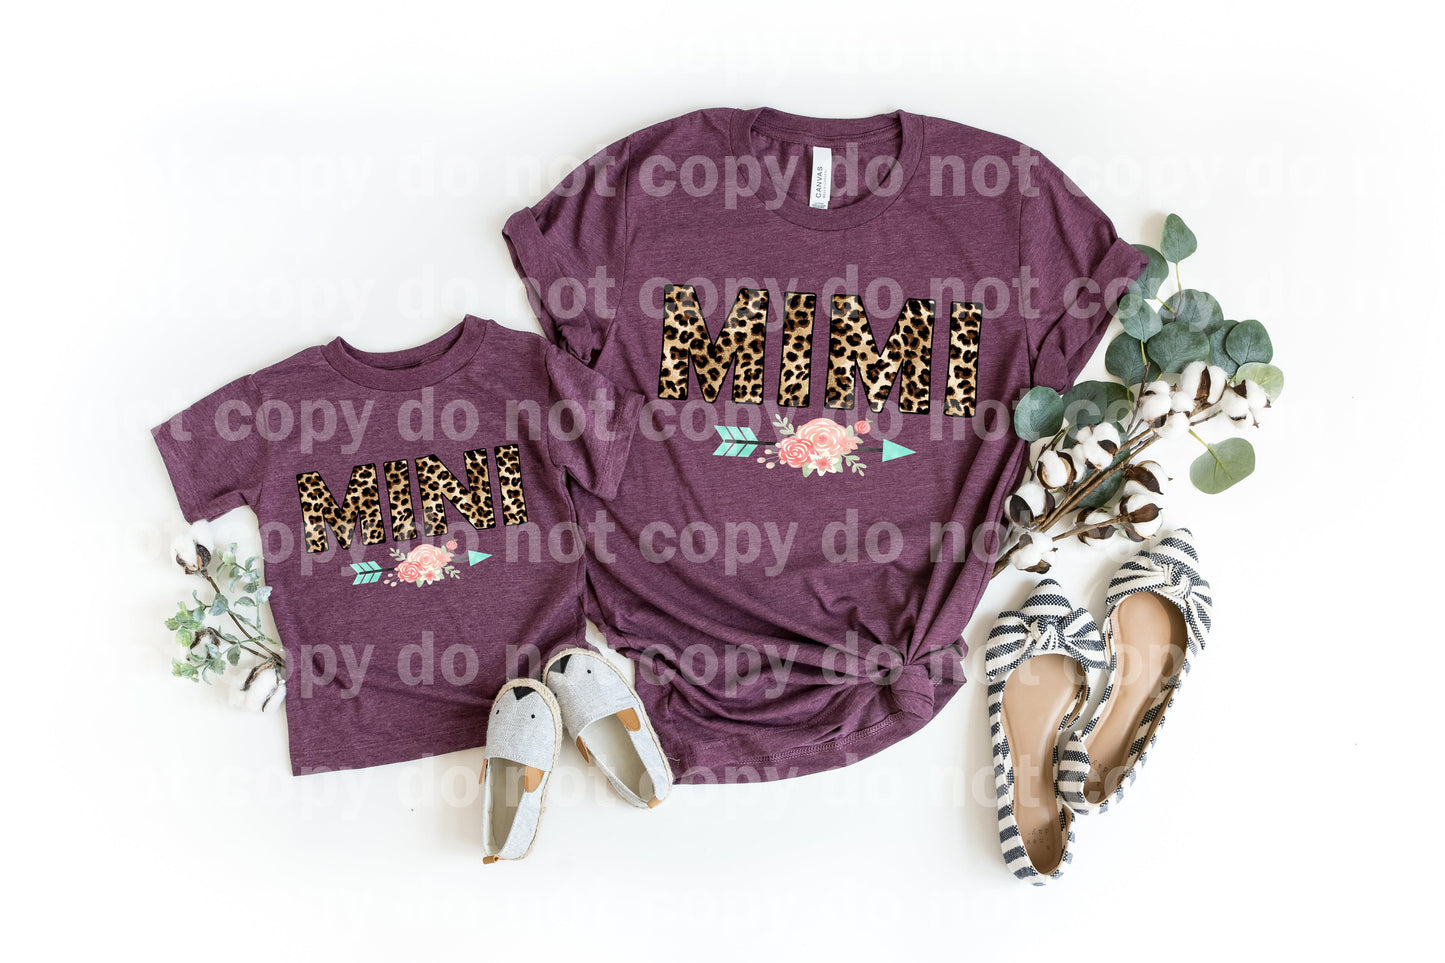 Mimi Leopard Blush Pale Teal Floral Arrow Dream Print or Sublimation Print